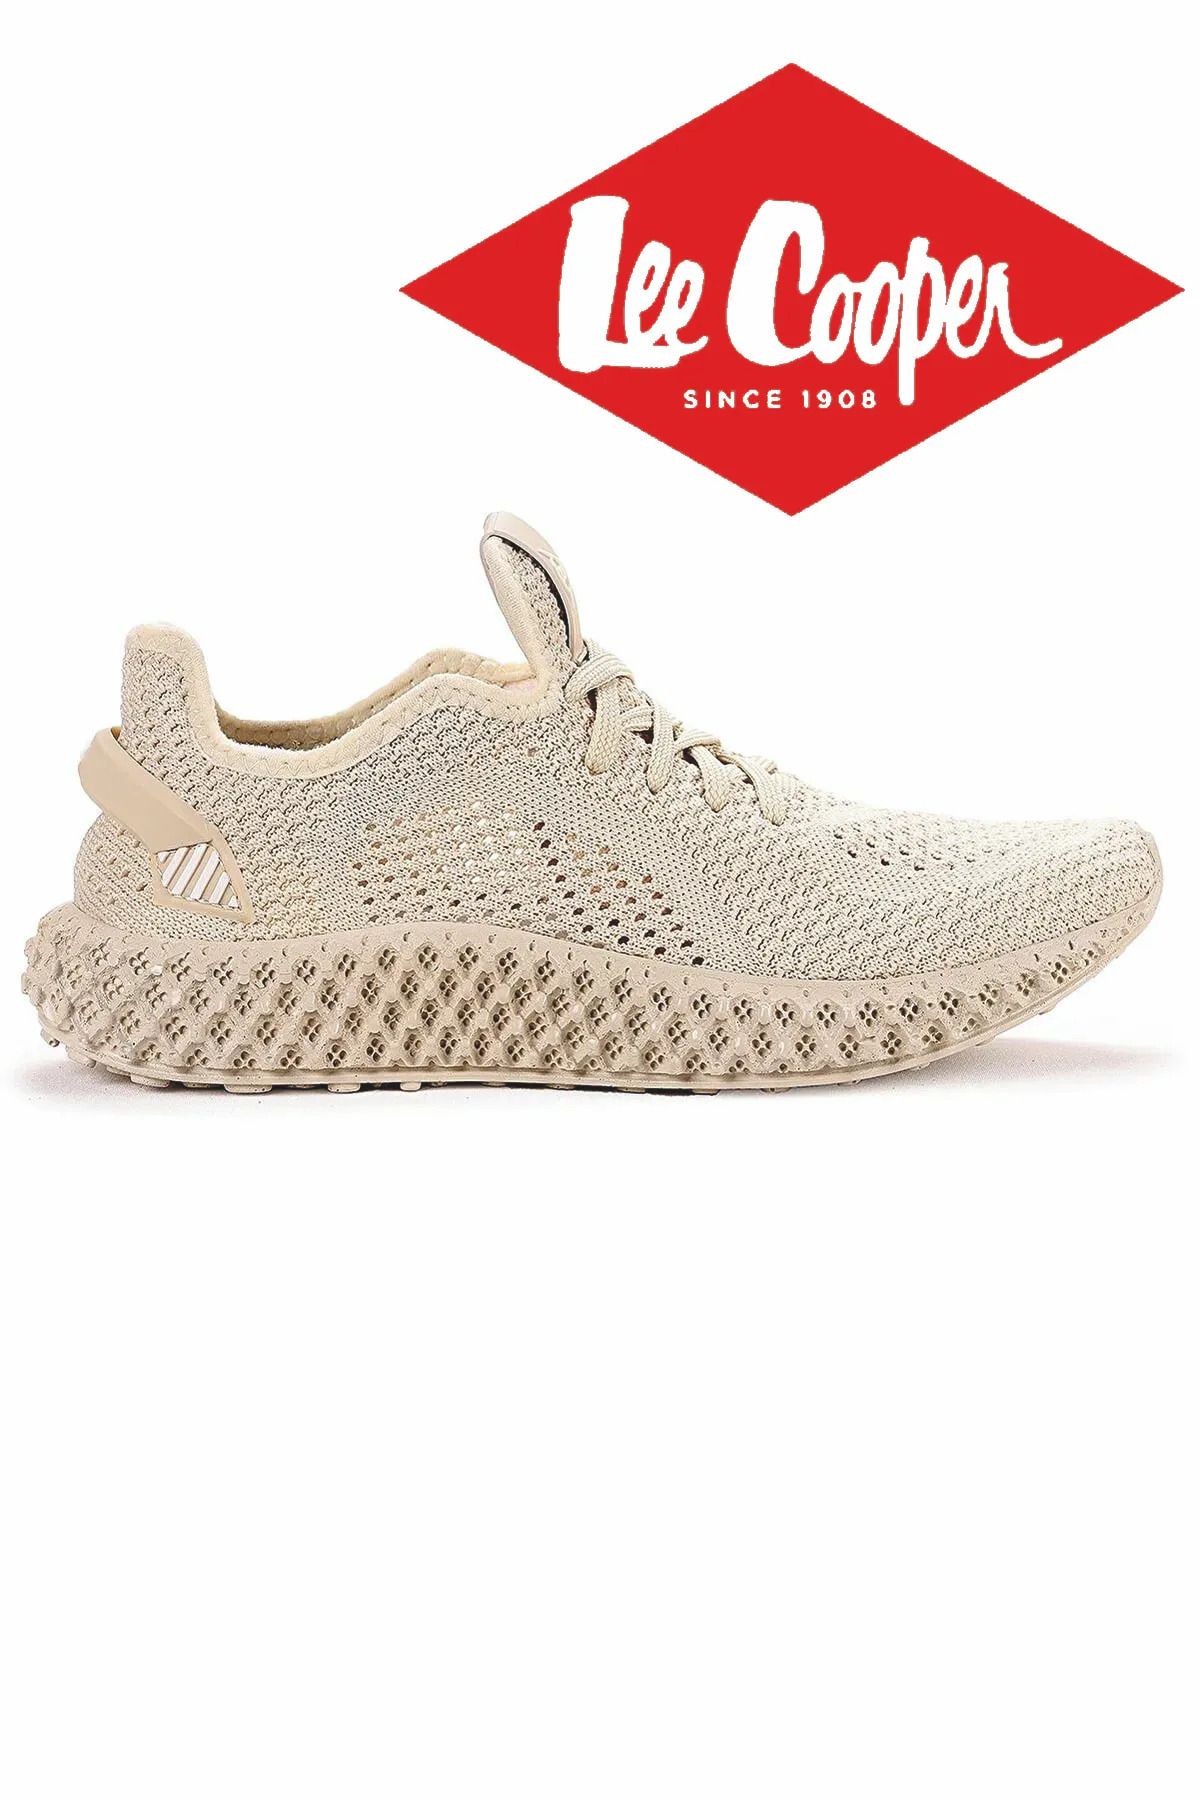 Lee Cooper Kadın Rahat Yürüyüş Spor Ayakkabı Sneaker